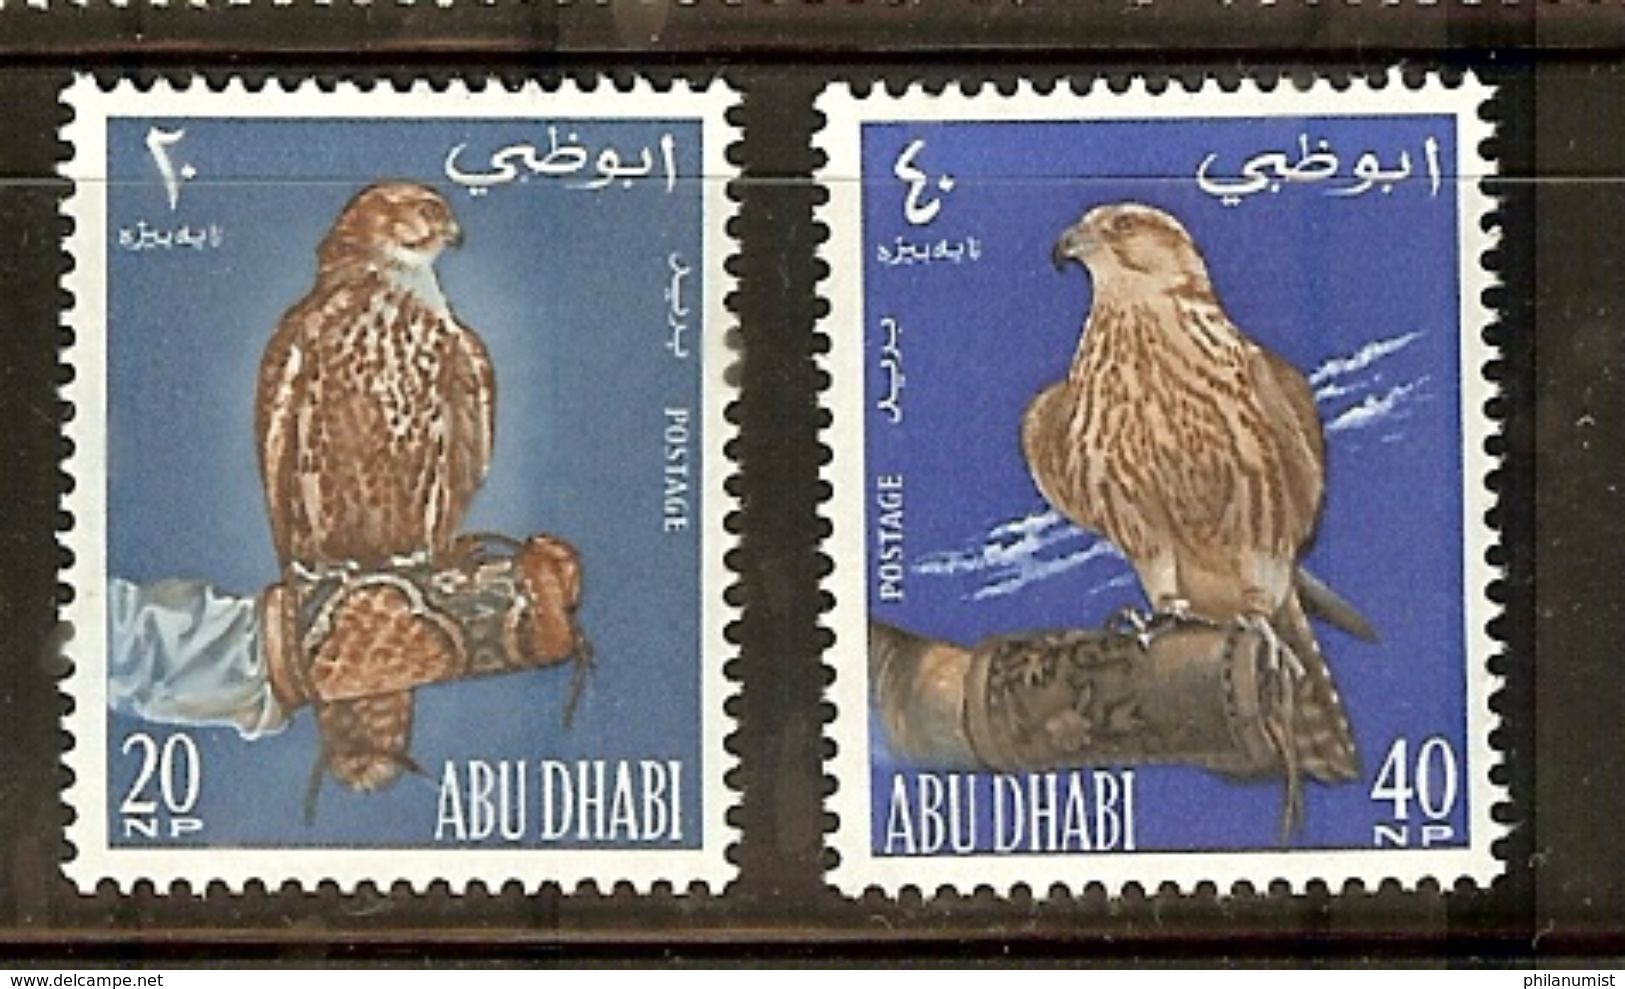 ABU DHABI BIRDS FALCON 2v 1965 MNH !! - Adler & Greifvögel